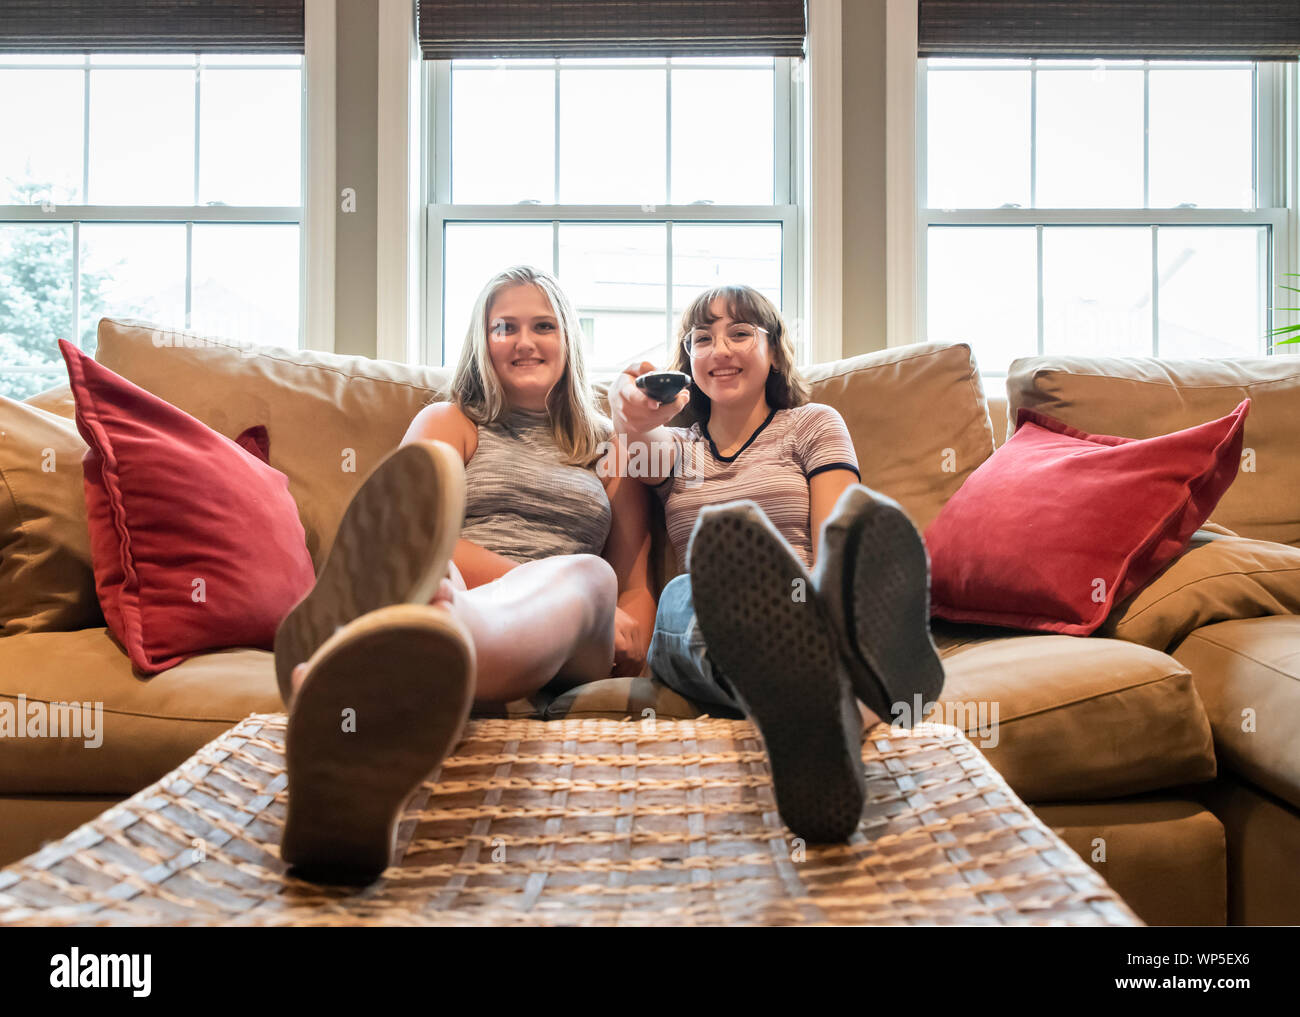 Due ragazze adolescenti seduti sul divano con i piedi fino a guardare la tv insieme. Foto Stock